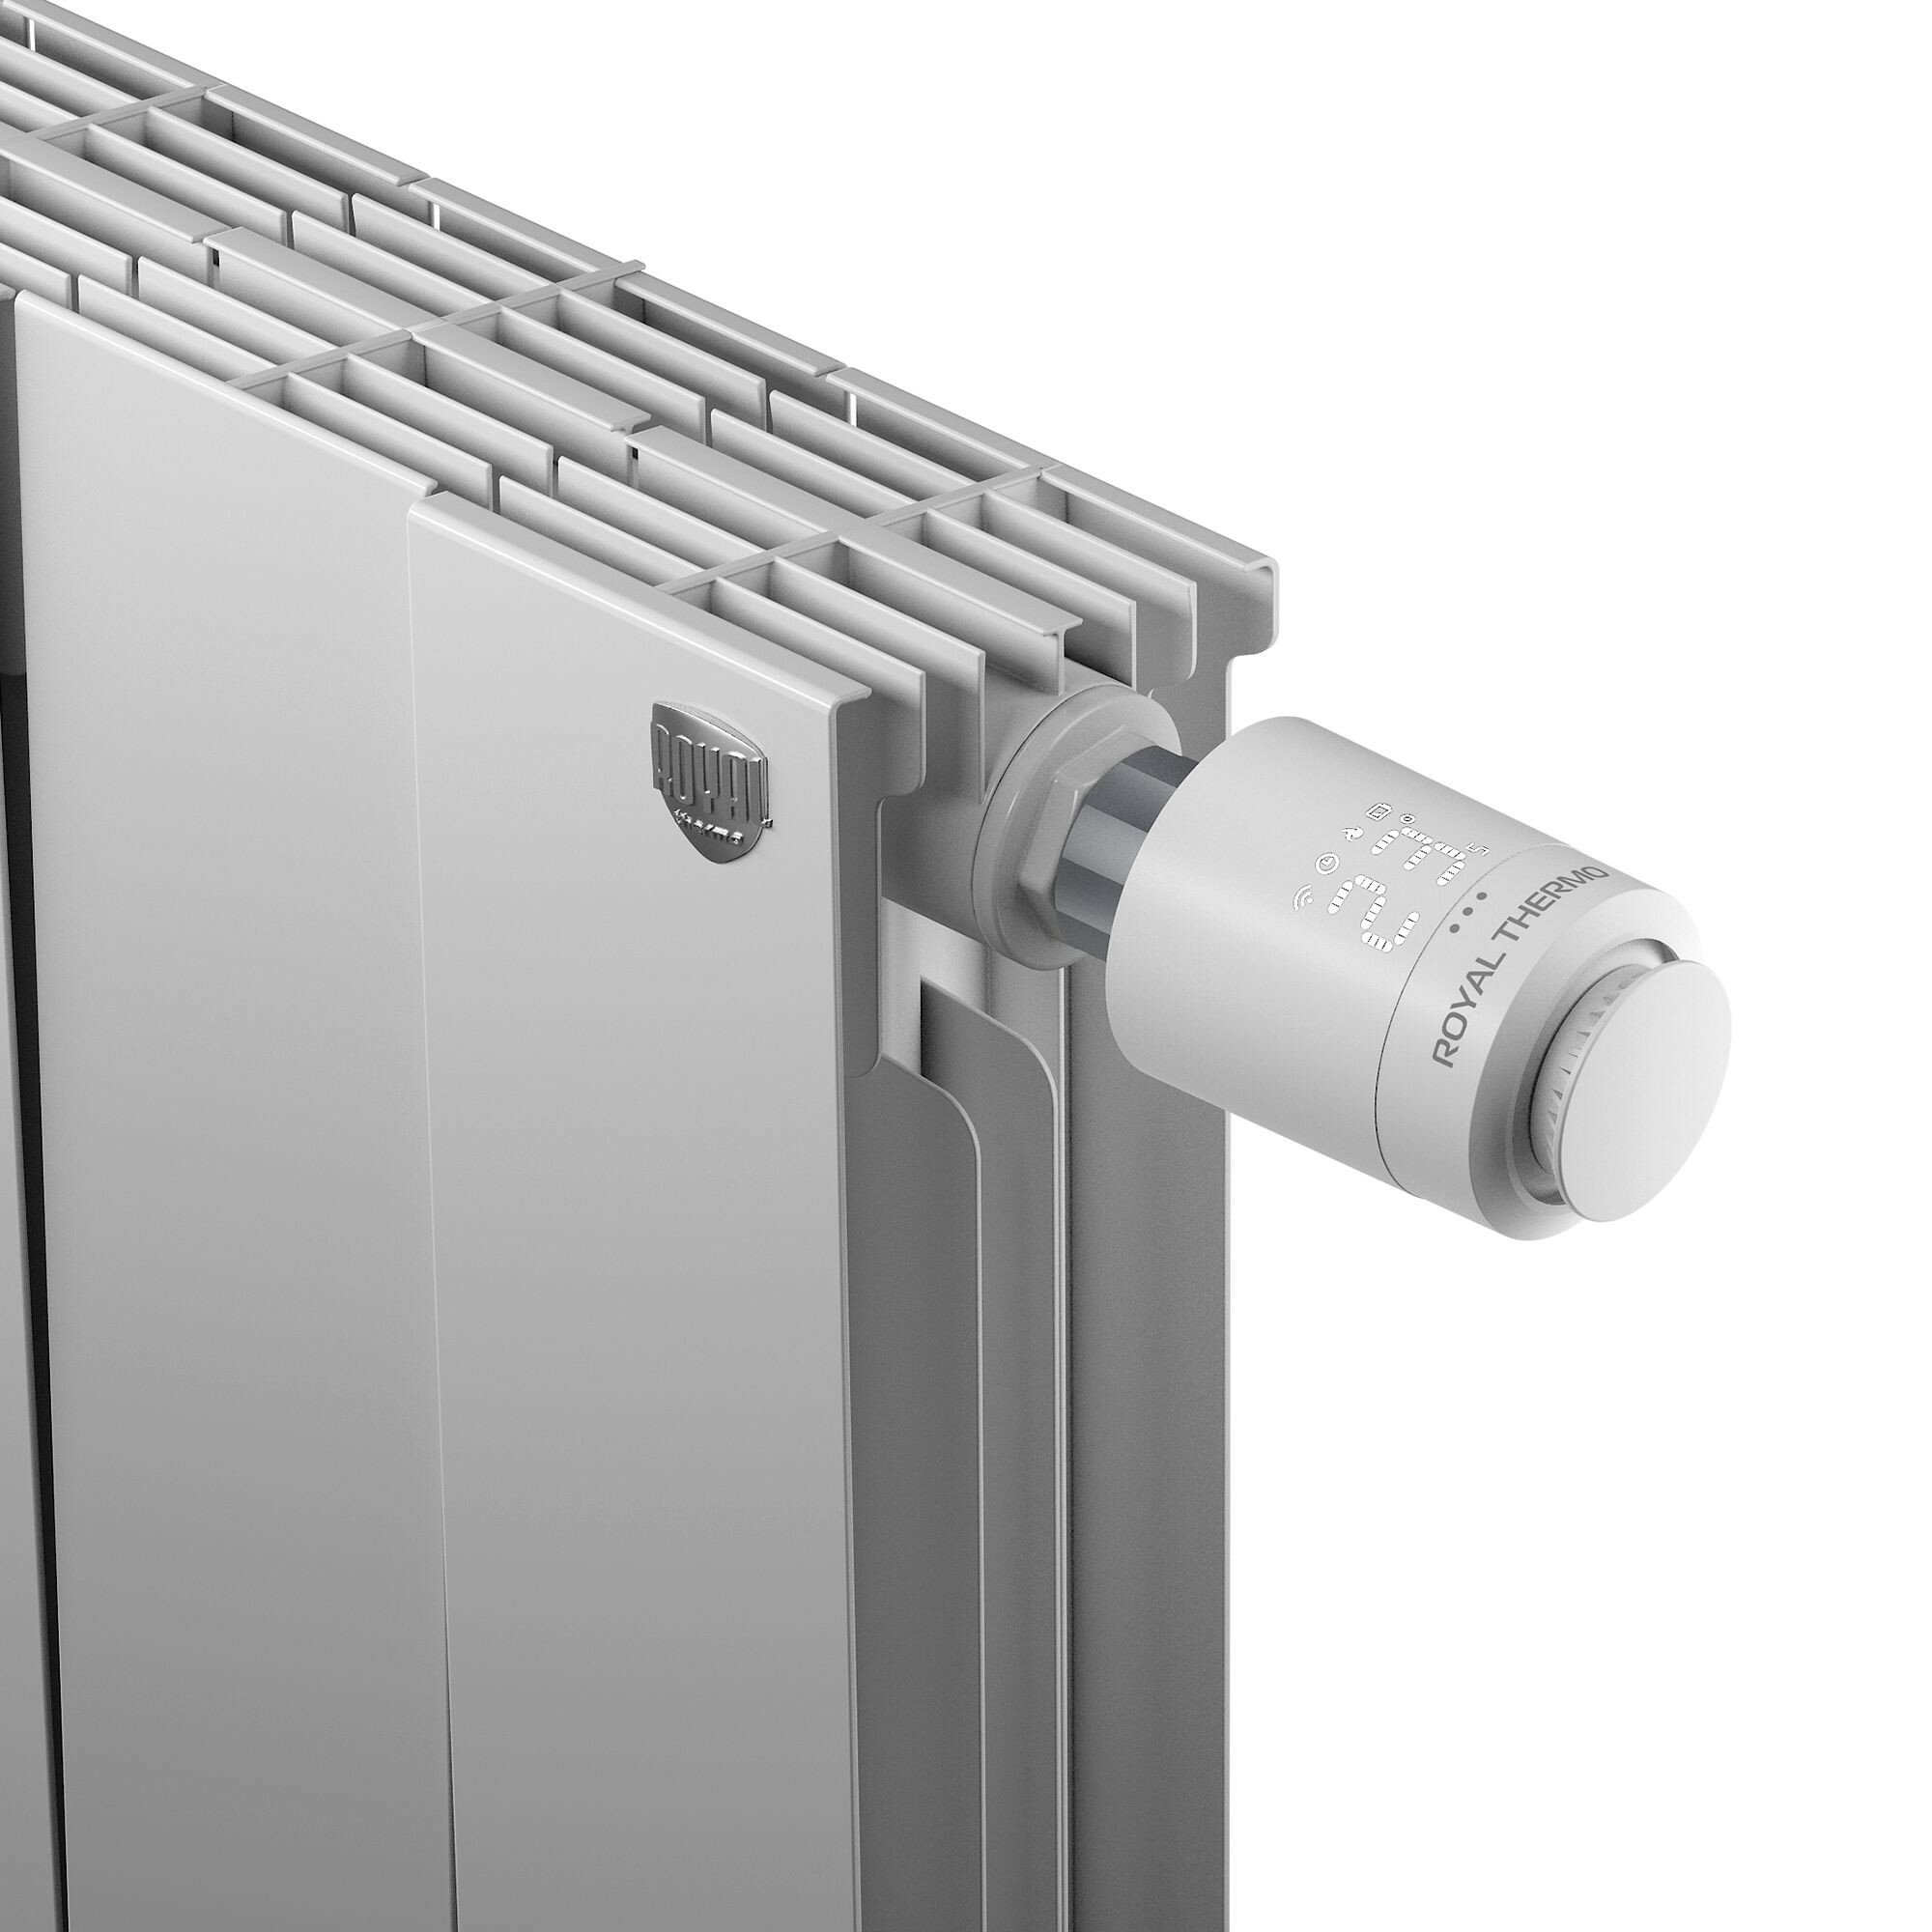 Термостатическая головка электронная с Wi-Fi хабом Royal Thermo для радиаторного клапана M30x1.5 цвет белый - фото №3